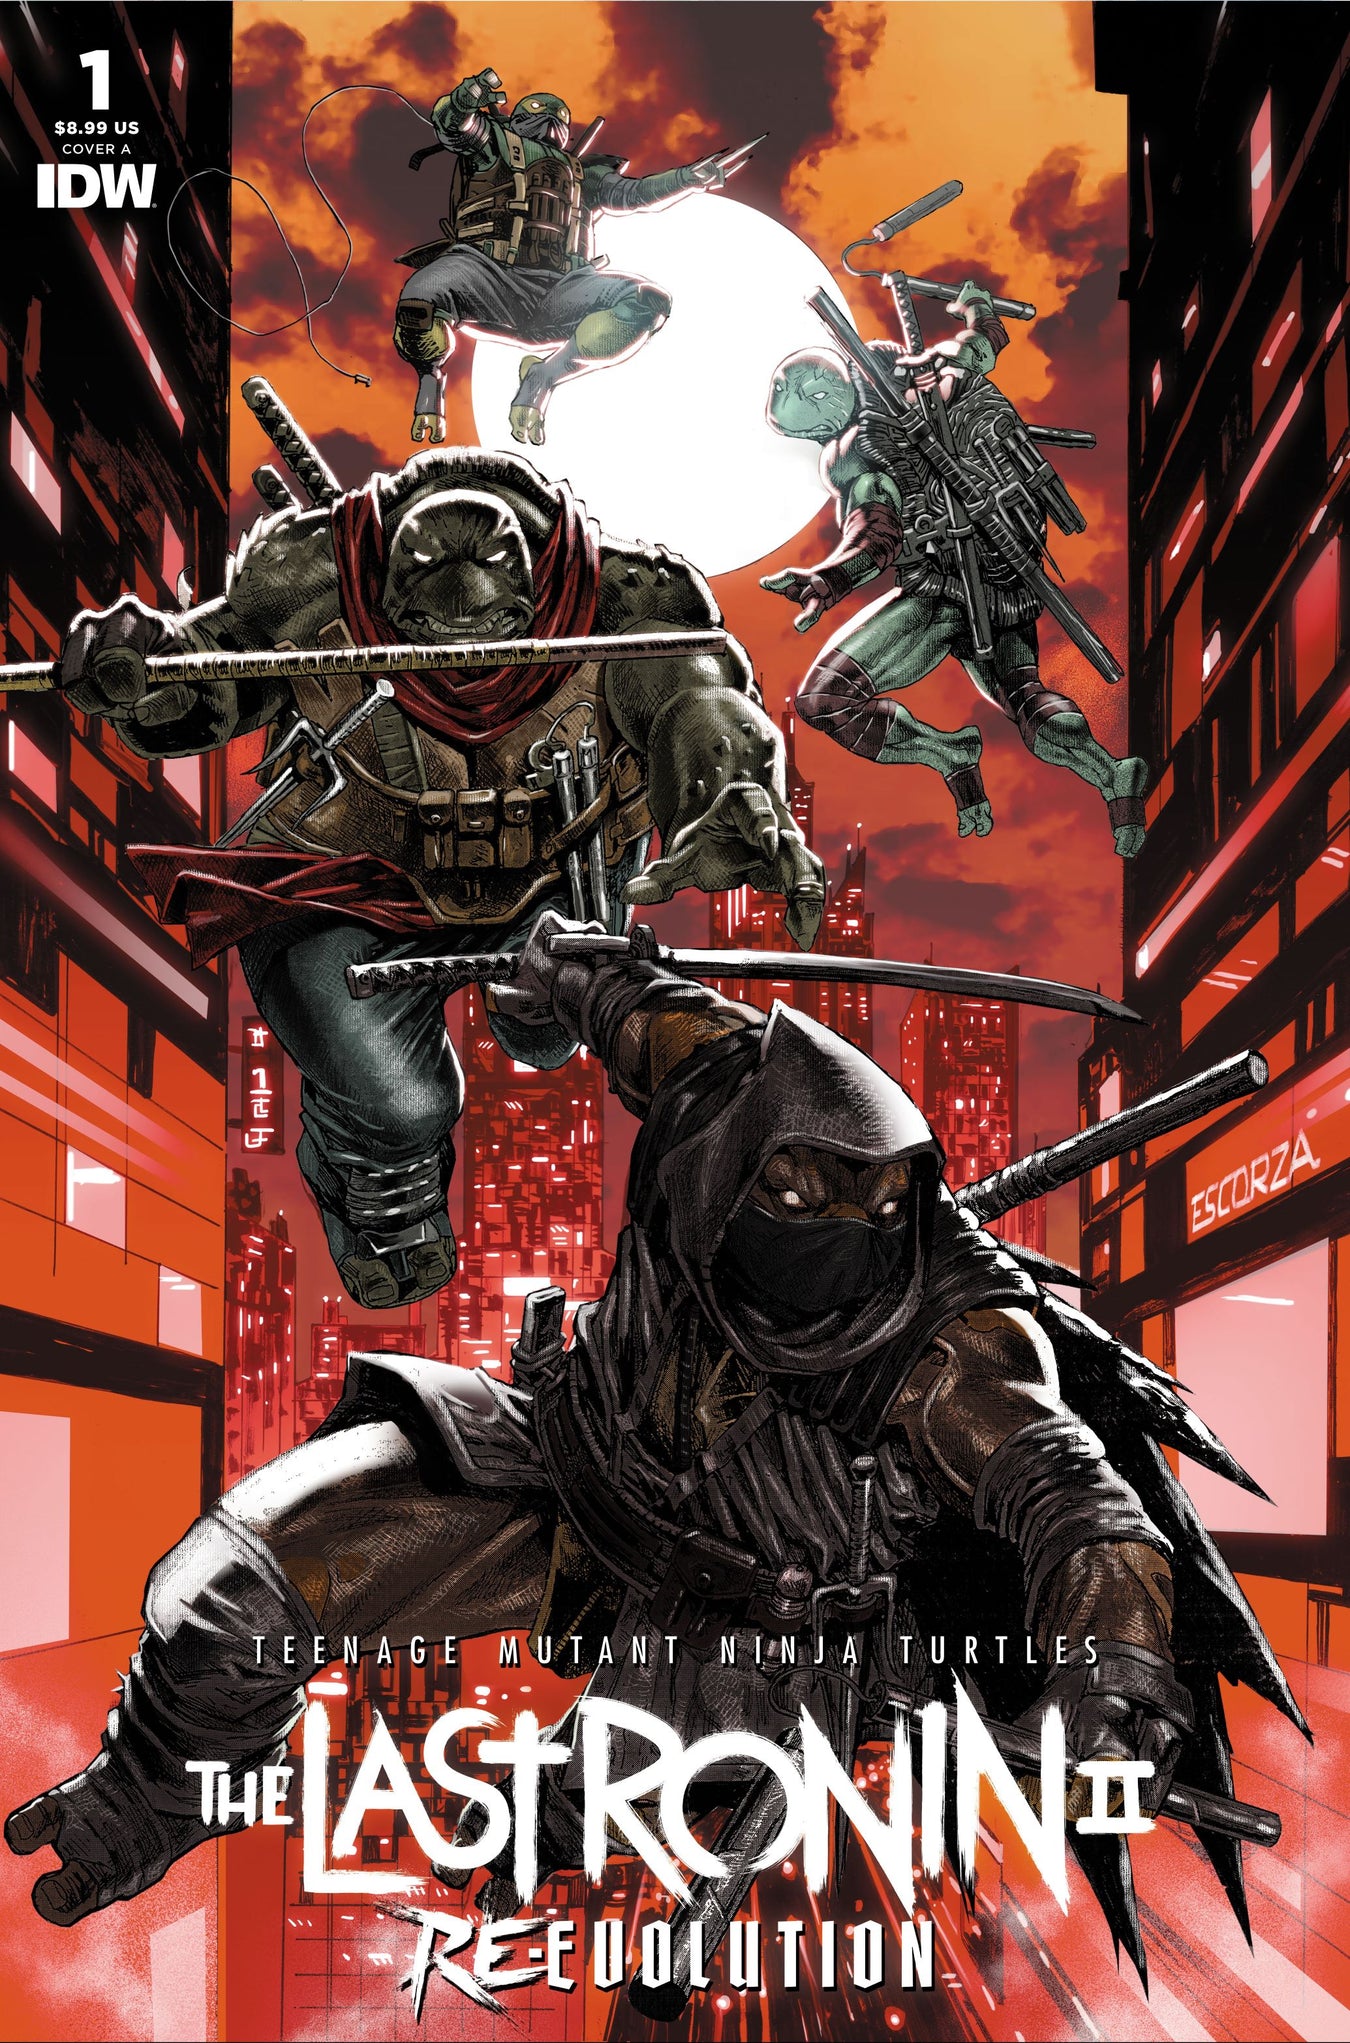 Teenage Mutant Ninja Turtles: The Last Ronin II Re-Evolution